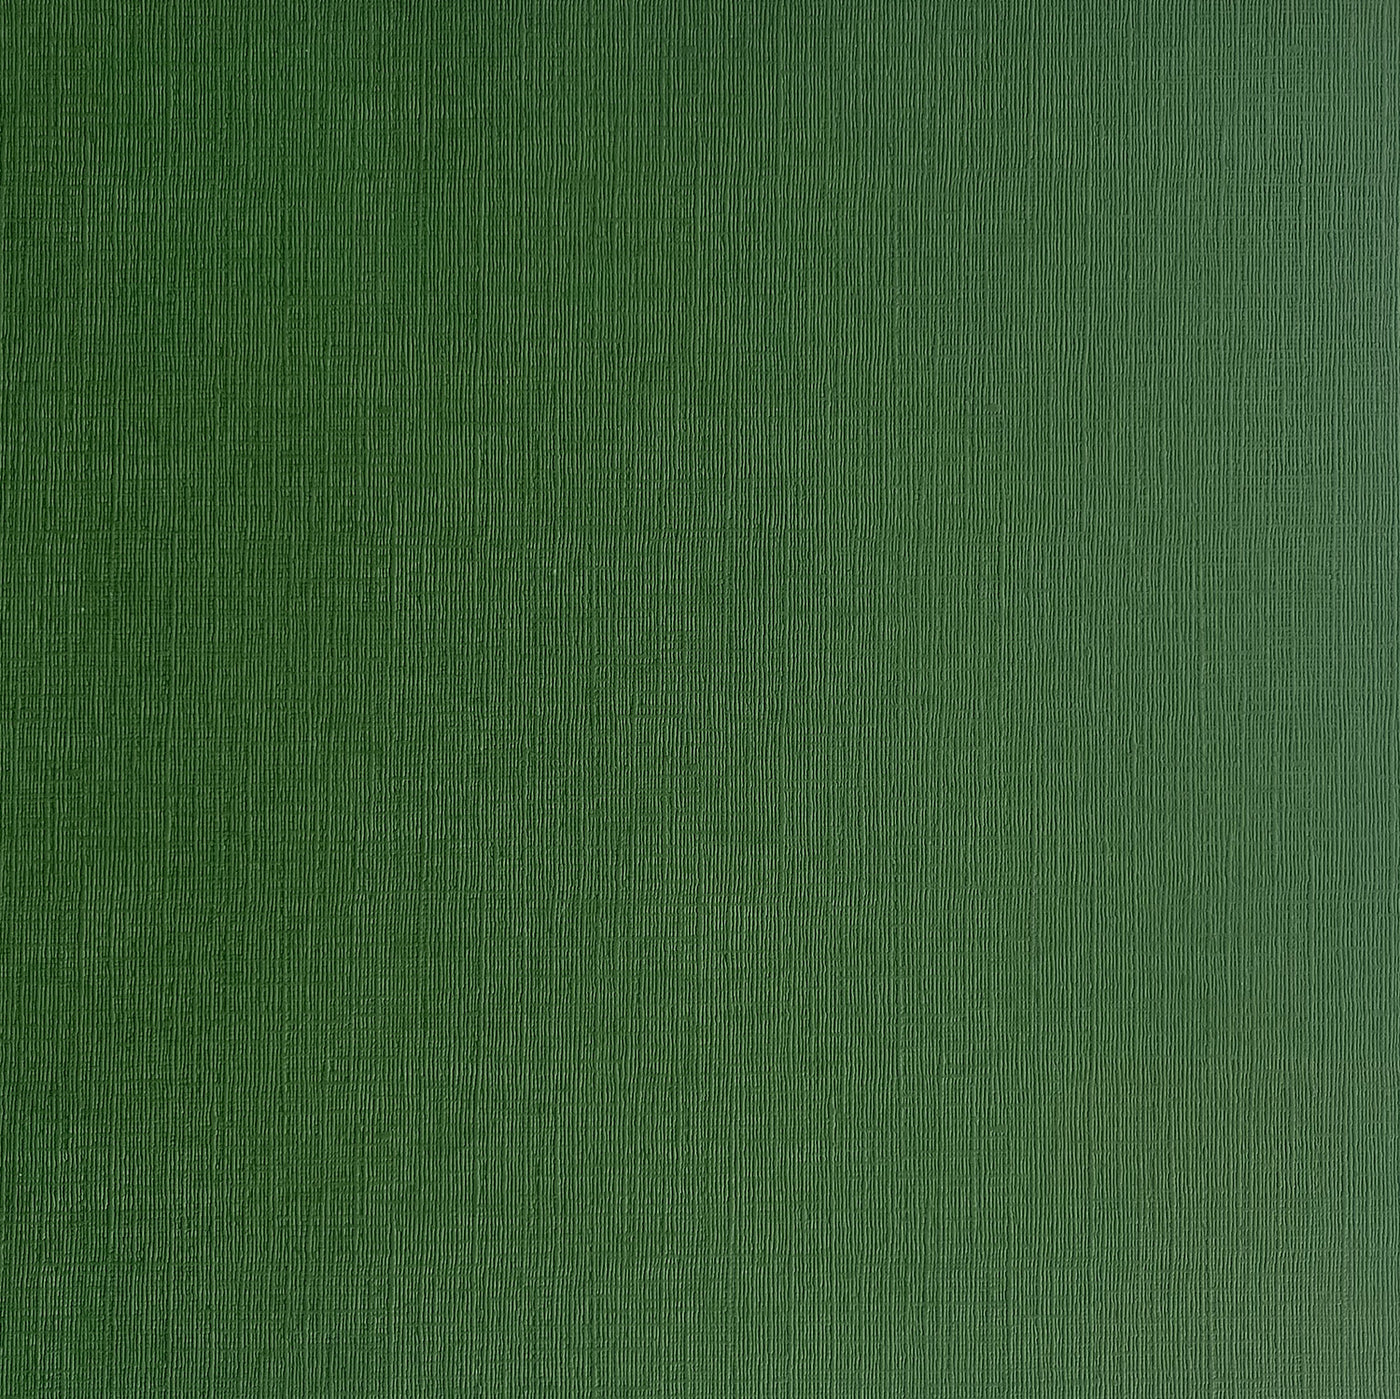 Evergreen - Textured 12x12 Cardstock - Dark green canvas scrapbook paper